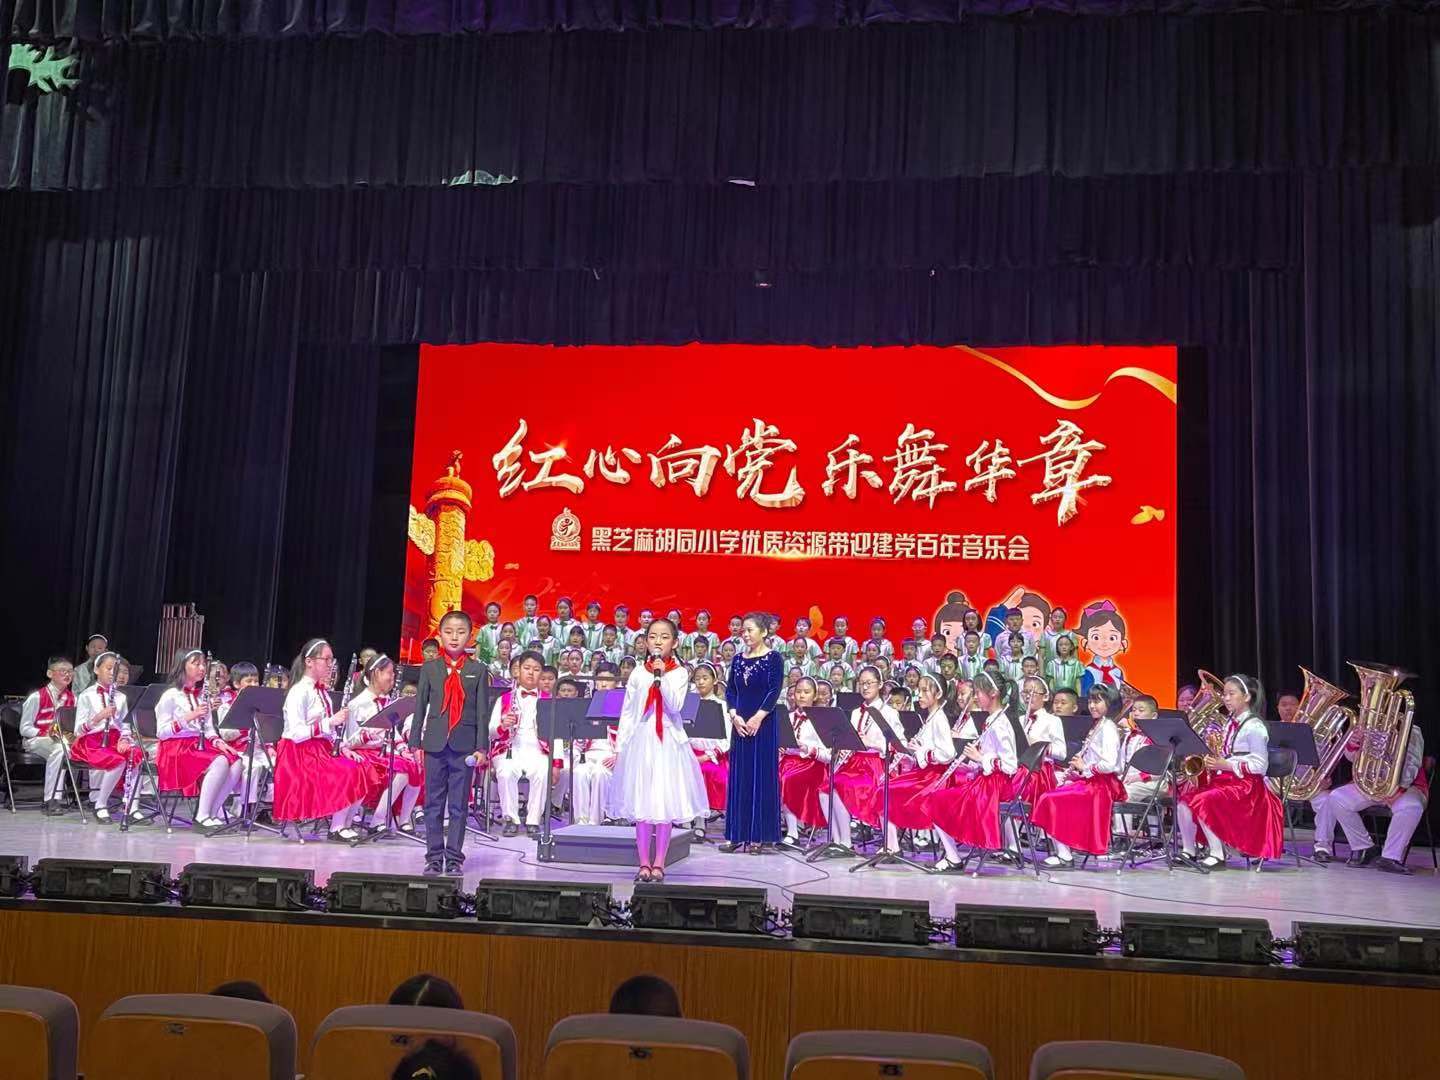 北京黑芝麻胡同小学举办“红心向党 乐舞华章”迎建党百年音乐会